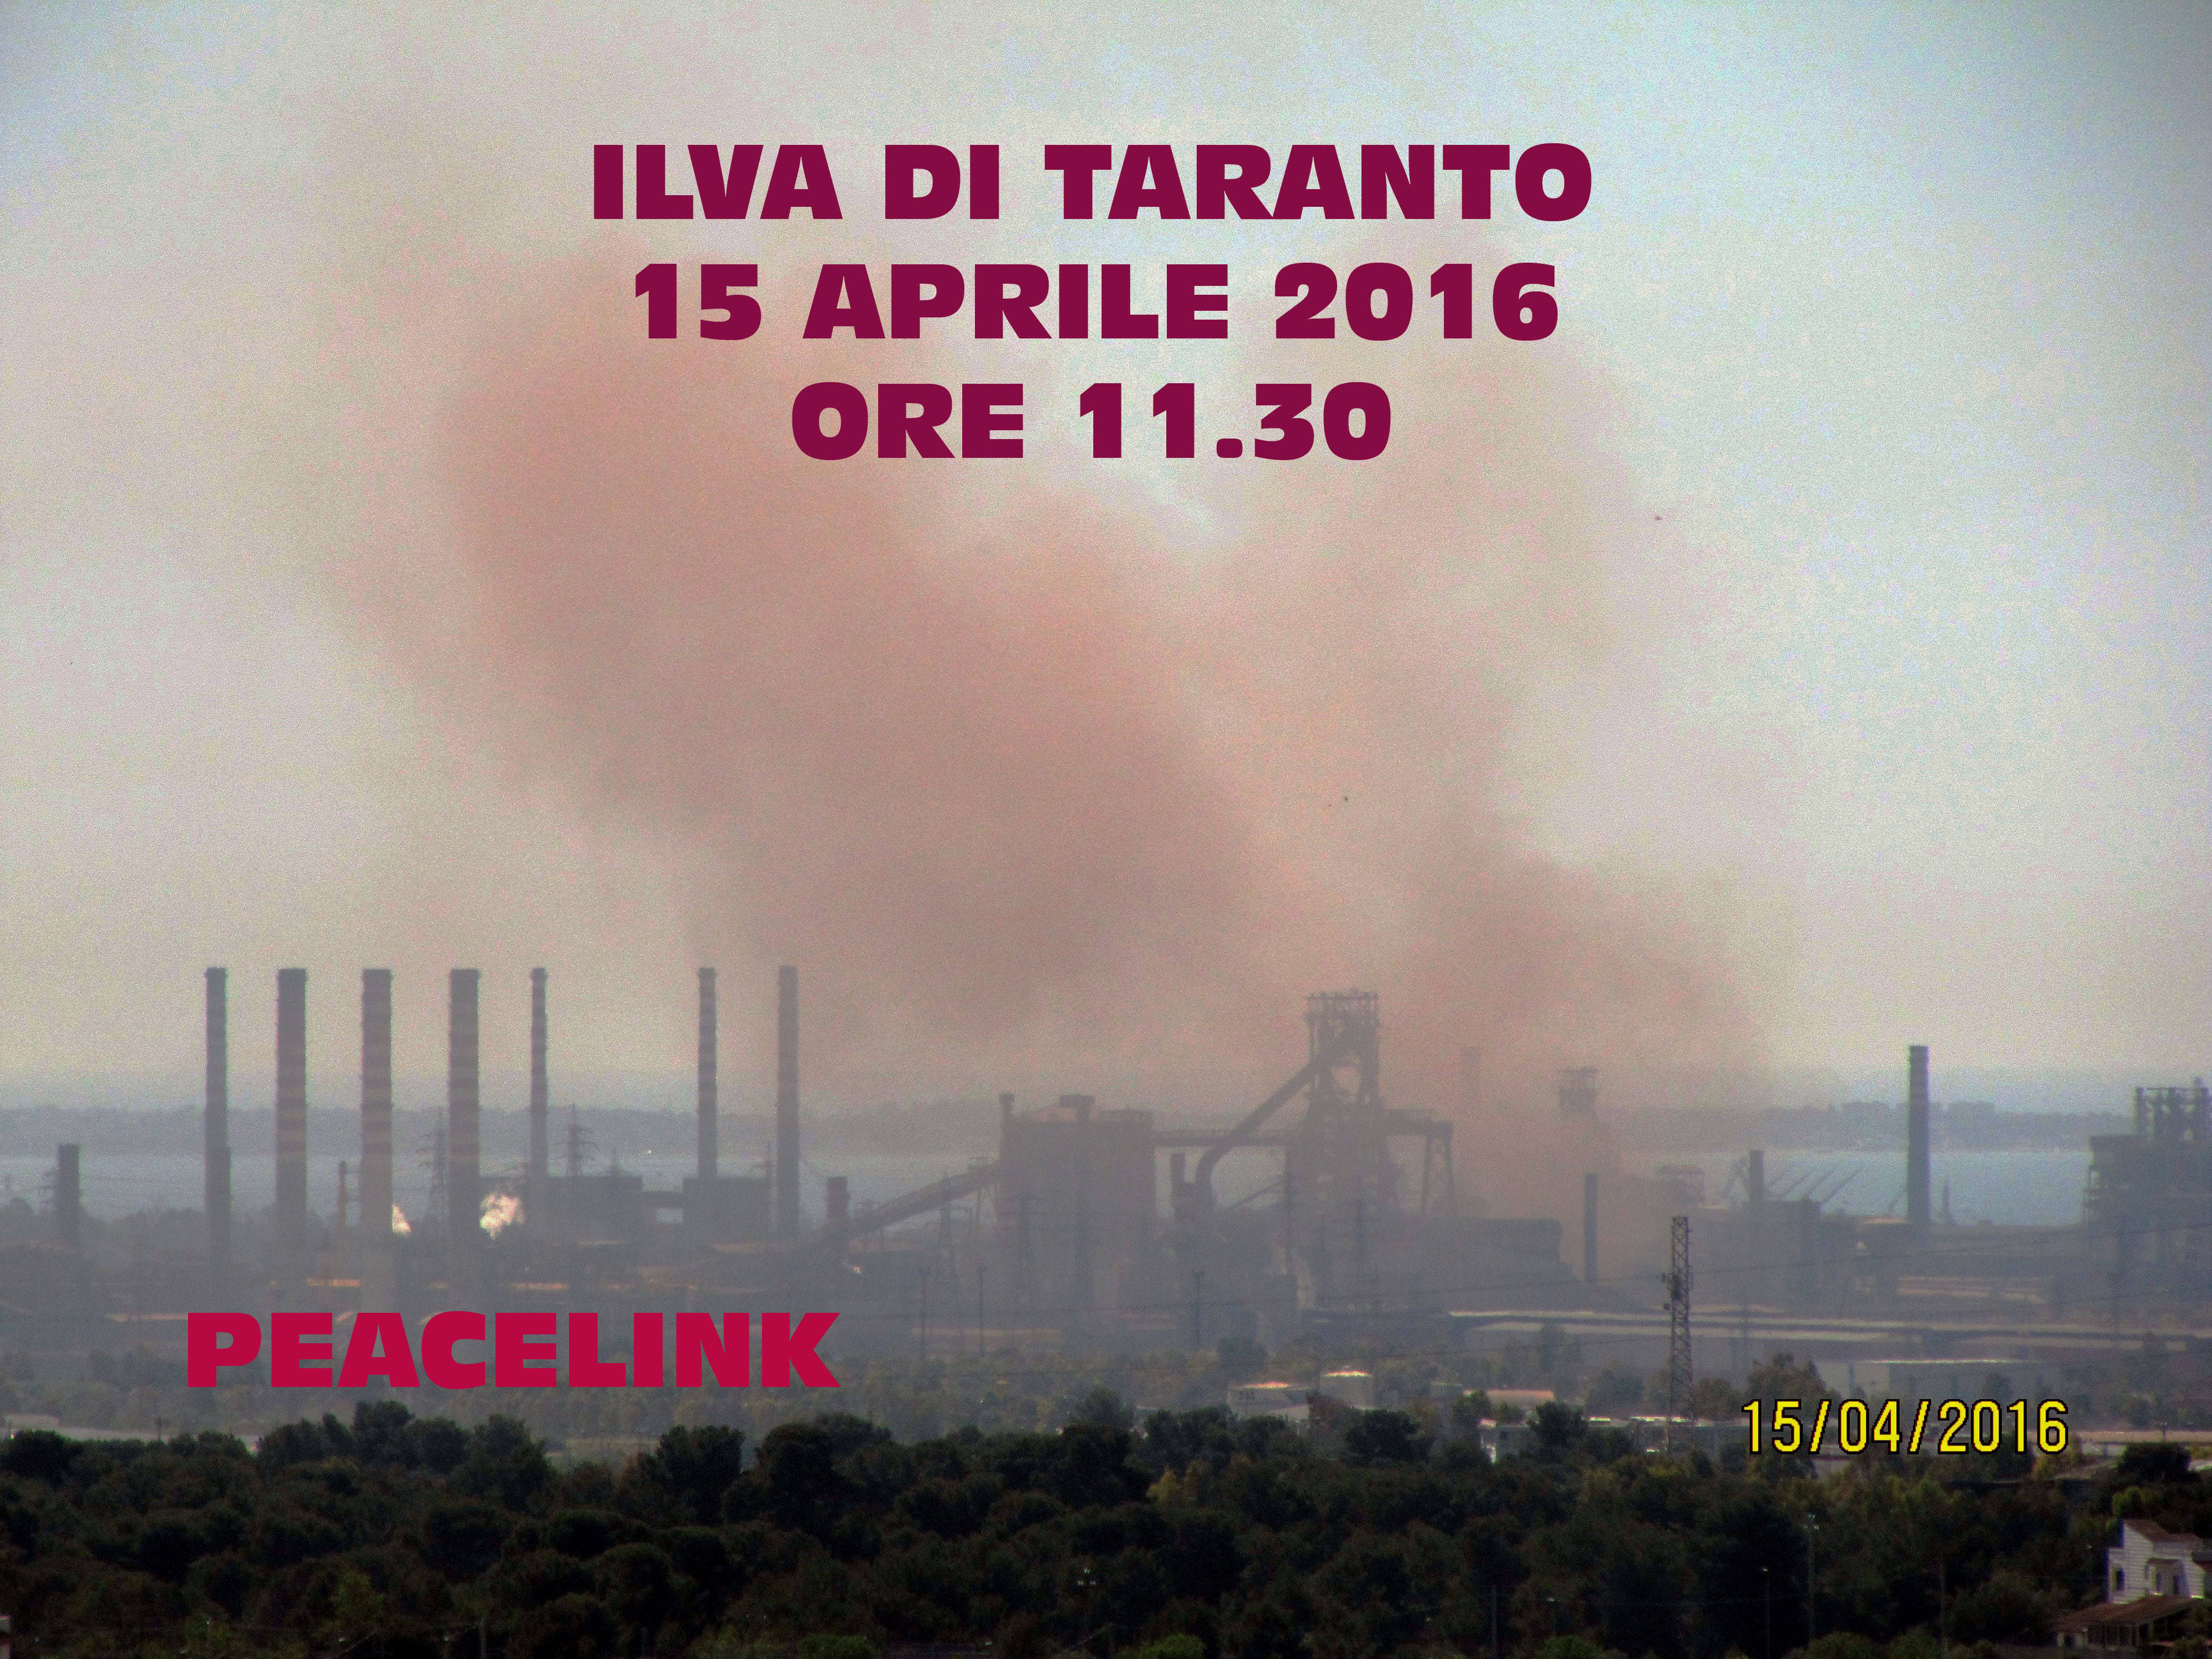 Slopping: emissione non convogliata proveniente dagli impianti dell'Ilva di Taranto